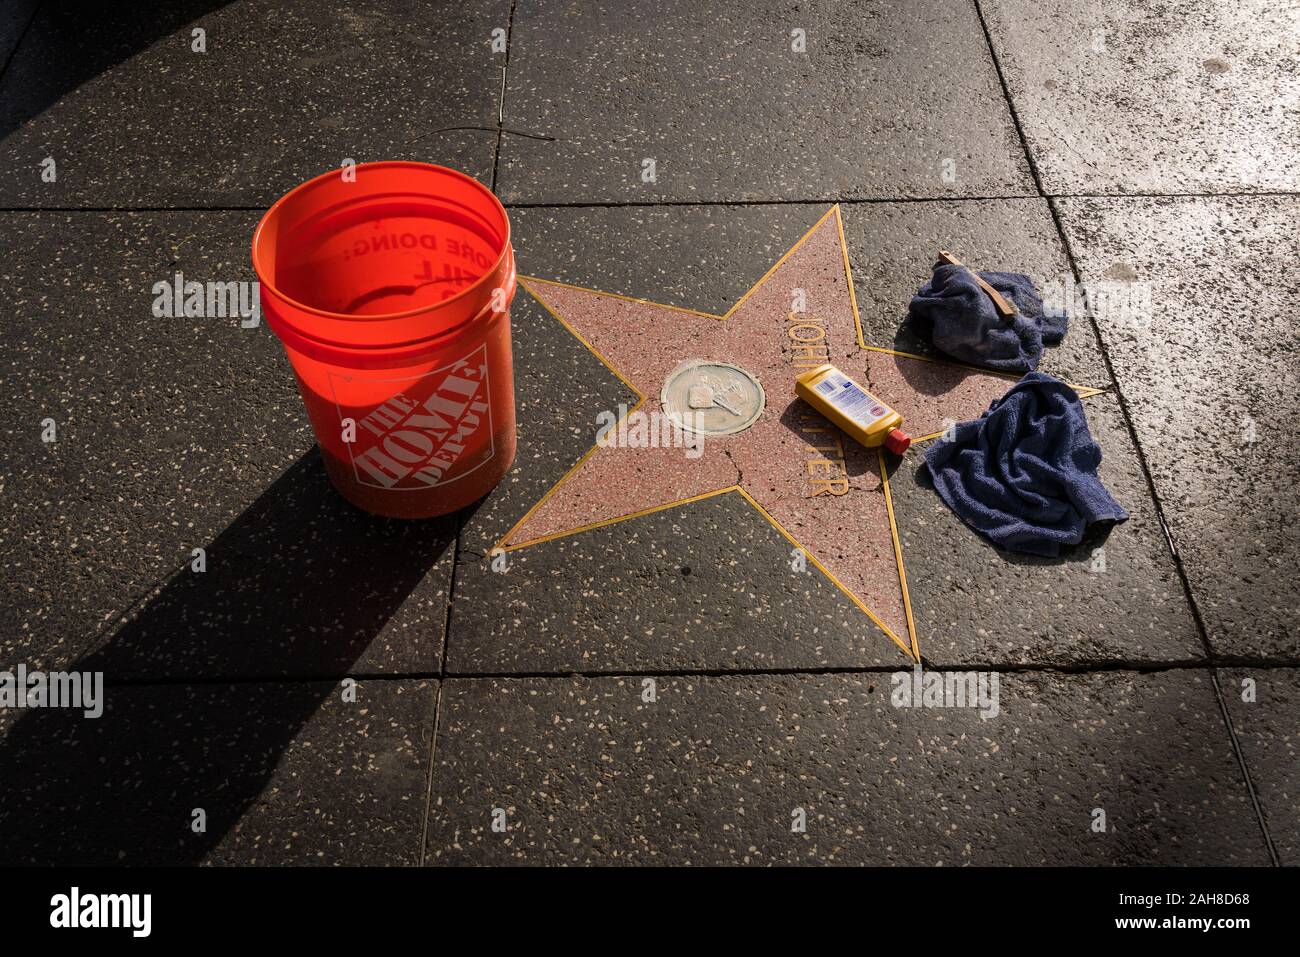 Stern auf dem Hollywood Walk of Fame in den Prozess der Reinigung, am späten Nachmittag Licht (Stern ehren John Ritter). Stockfoto